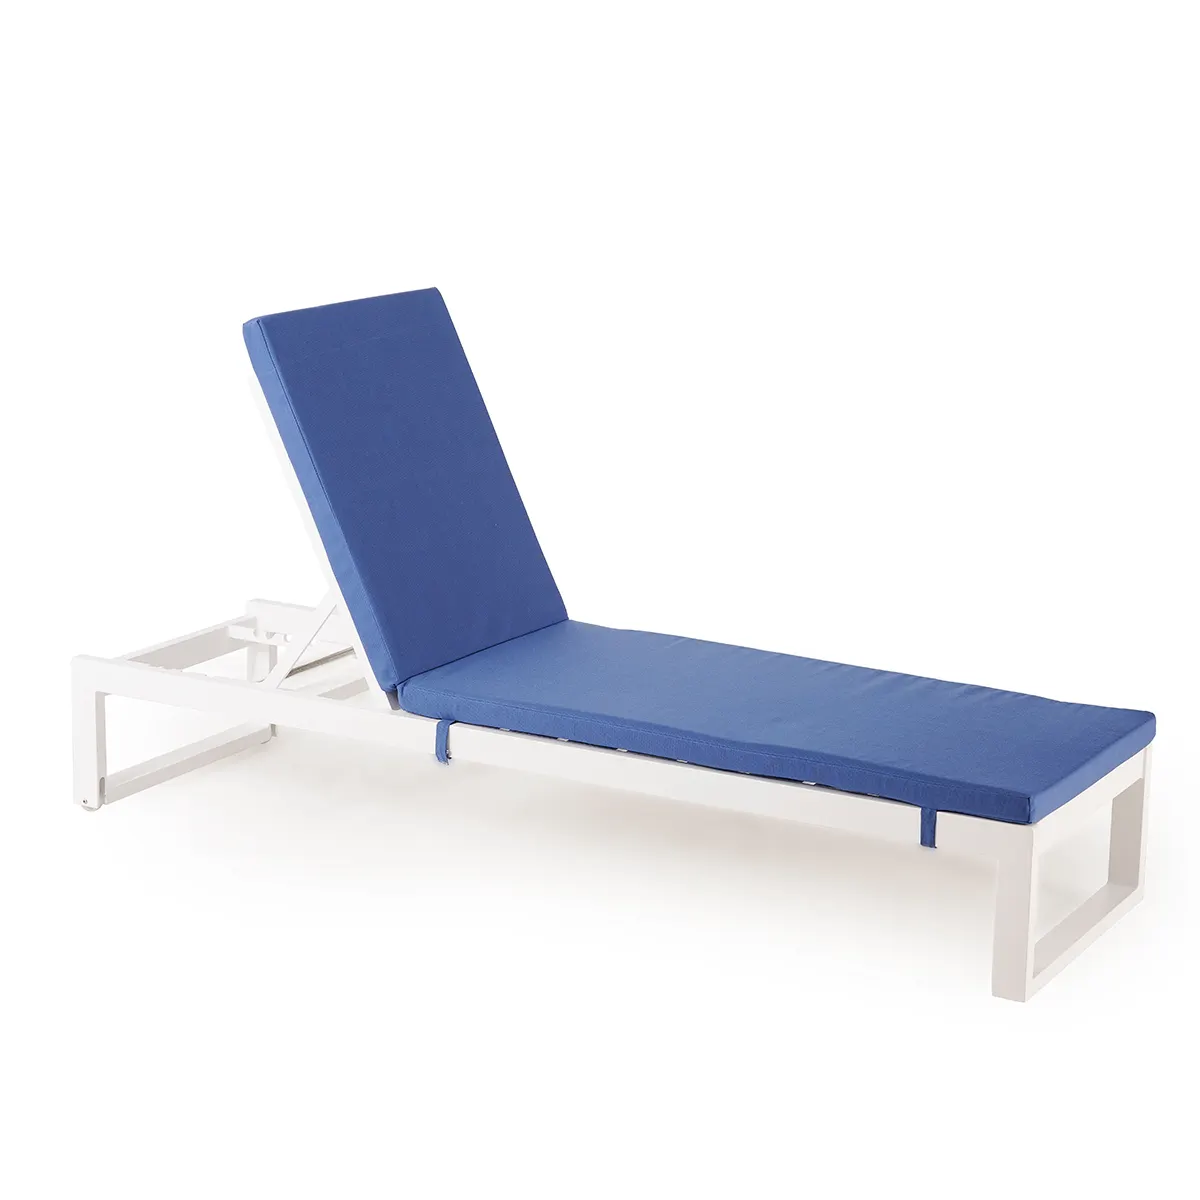 واحة من الألومنيوم: كرسي صالة قابل للتعديل للغاية للاسترخاء الممتاز والاستحمام الشمسي المريح في أي مكان